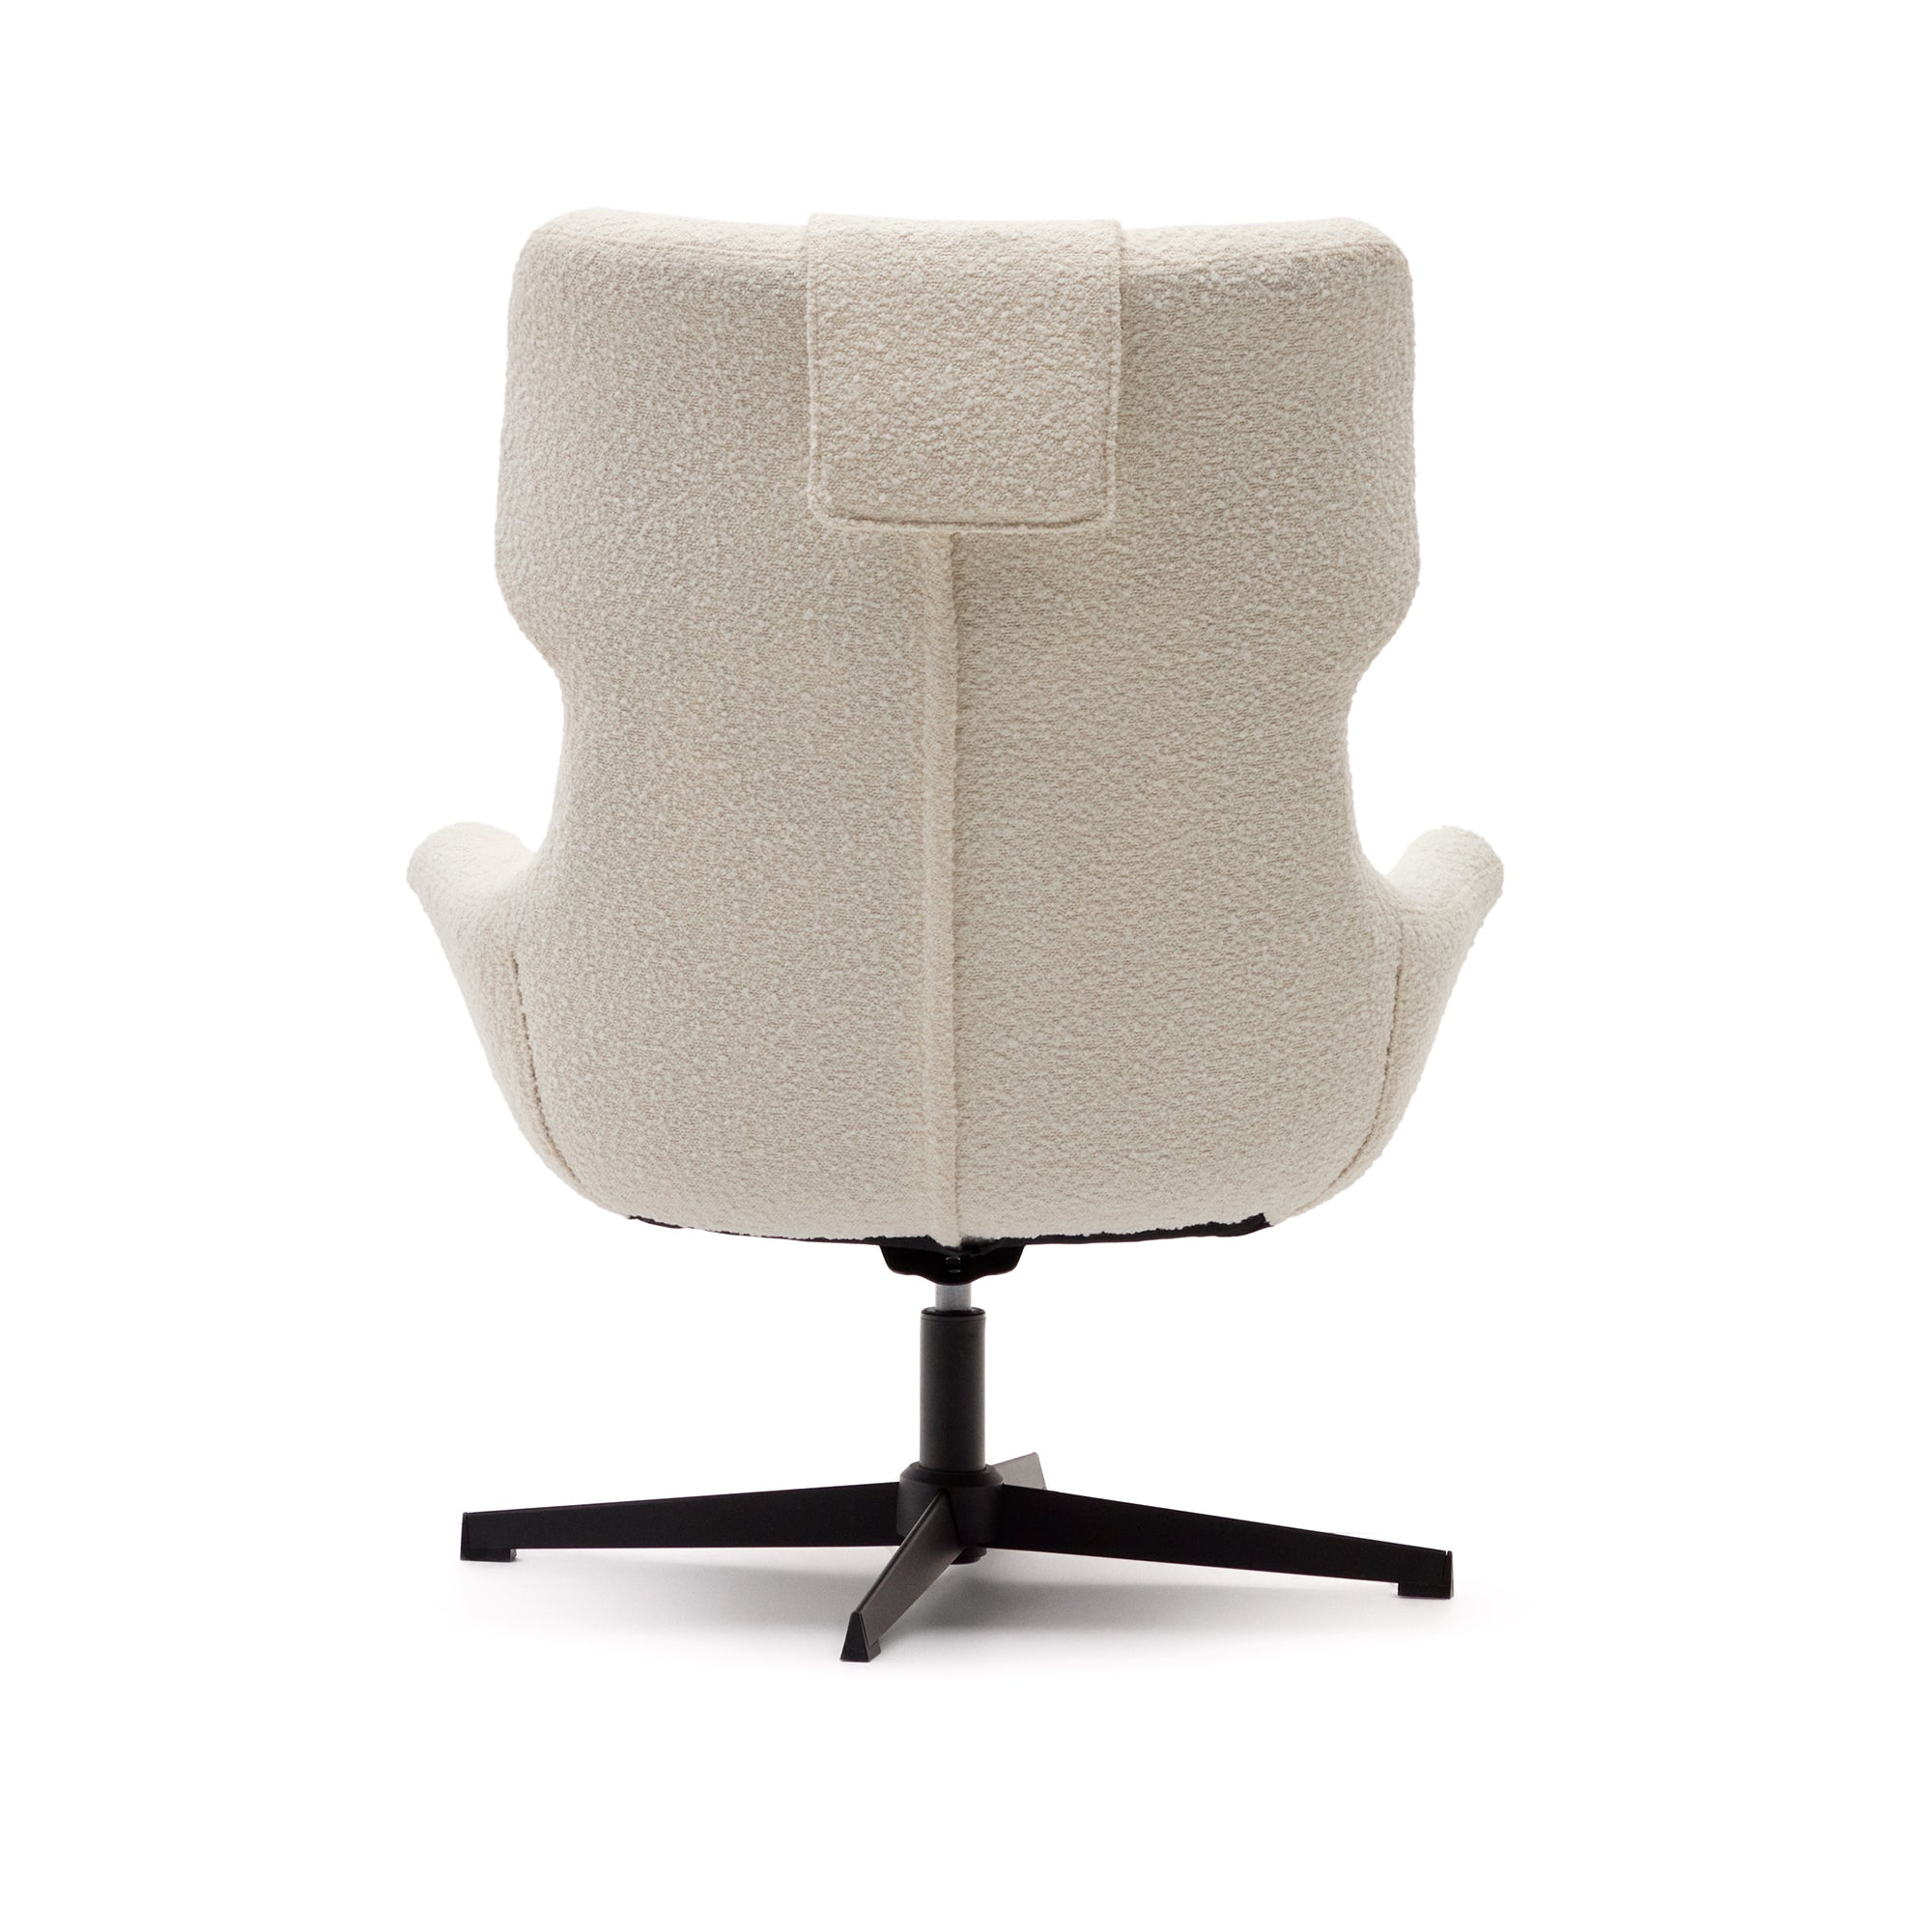 Zalina forgó fotel fehér nyírbőrből és acélból, fekete színű kivitelben